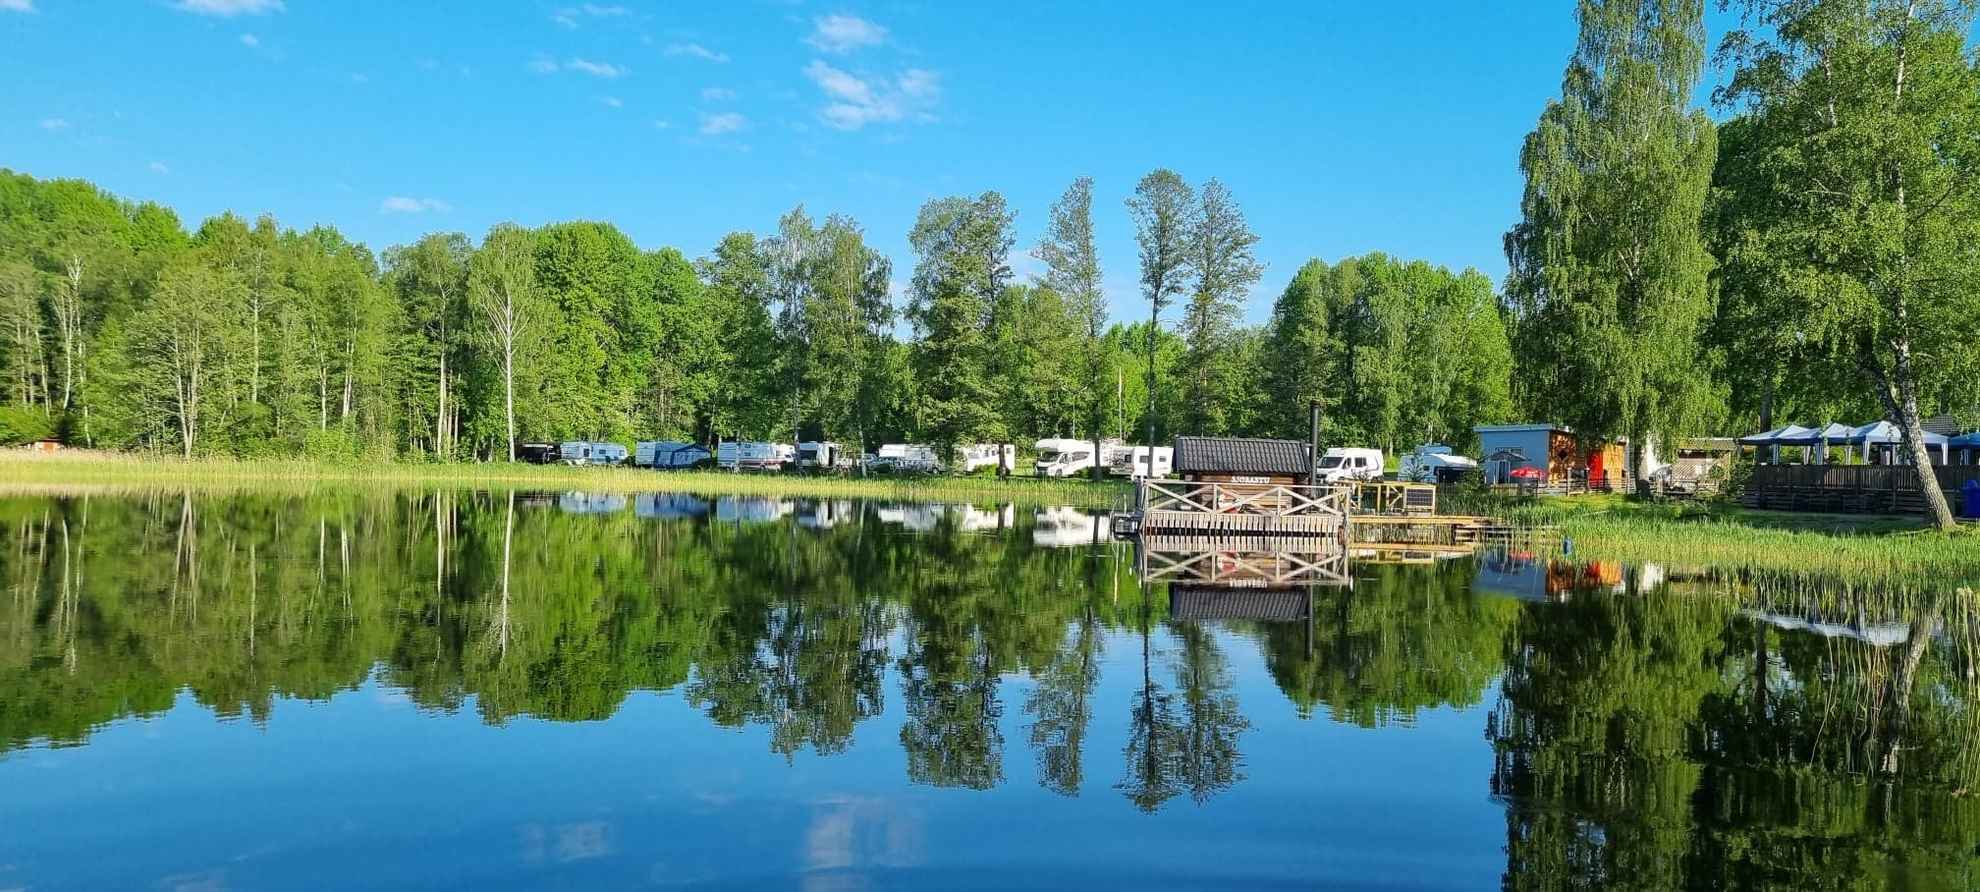 Im Wasser des Nossener Sees spiegeln sich die umliegenden Grünanlagen und die am Wasser geparkten Wohnmobile.